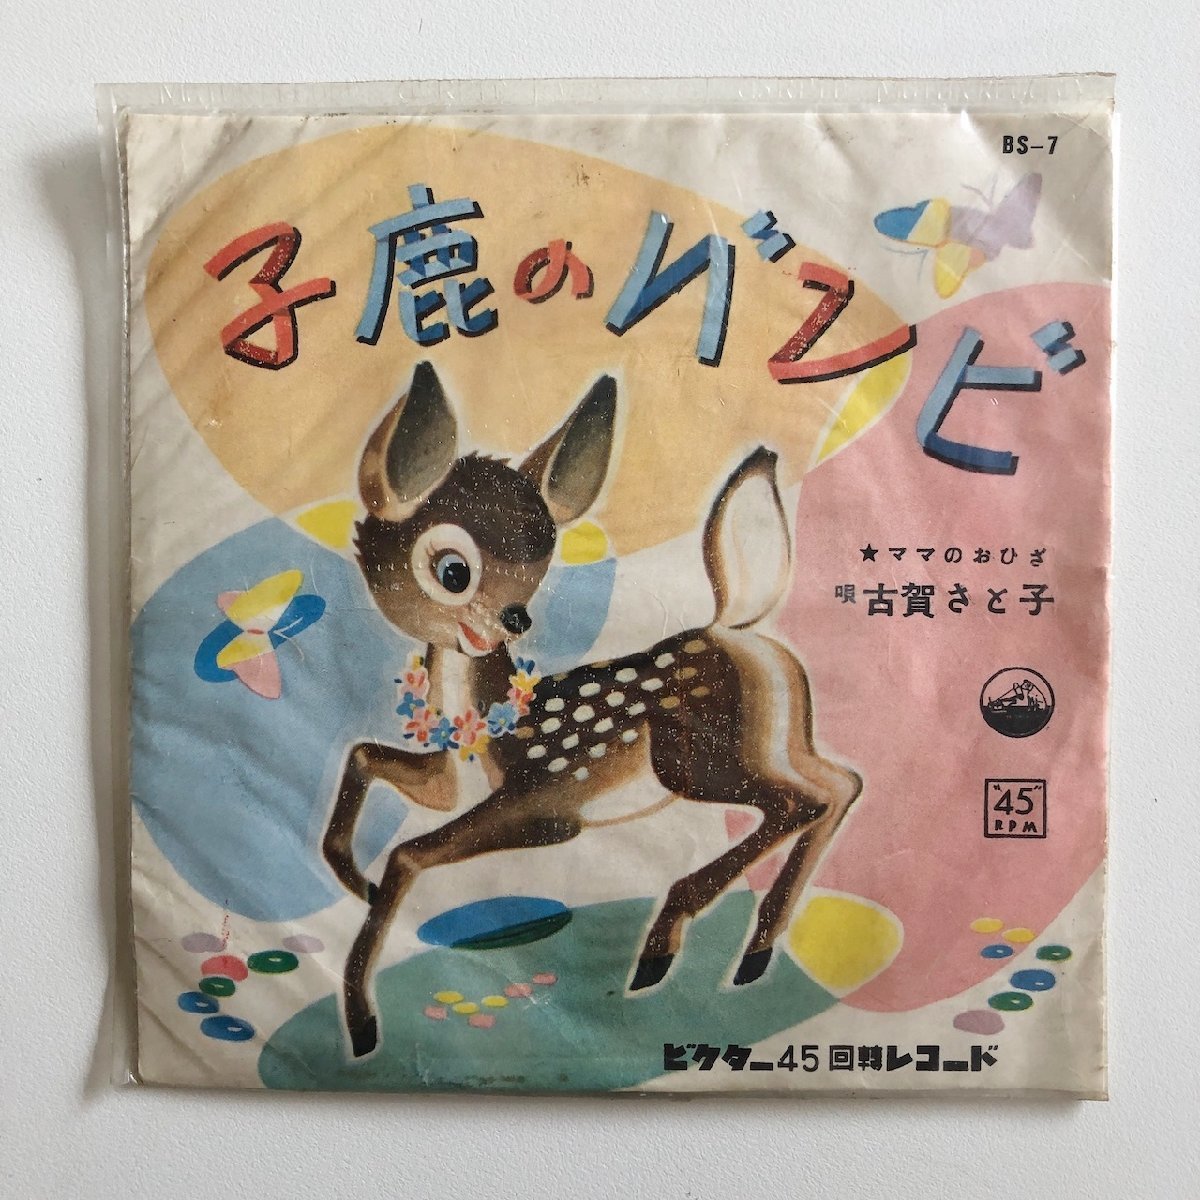 EP/ 古賀さと子 / 「子鹿のバンビ」「ママのおひざ」 / 国内盤 ビニールジャケ VICTOR BS-7の画像1